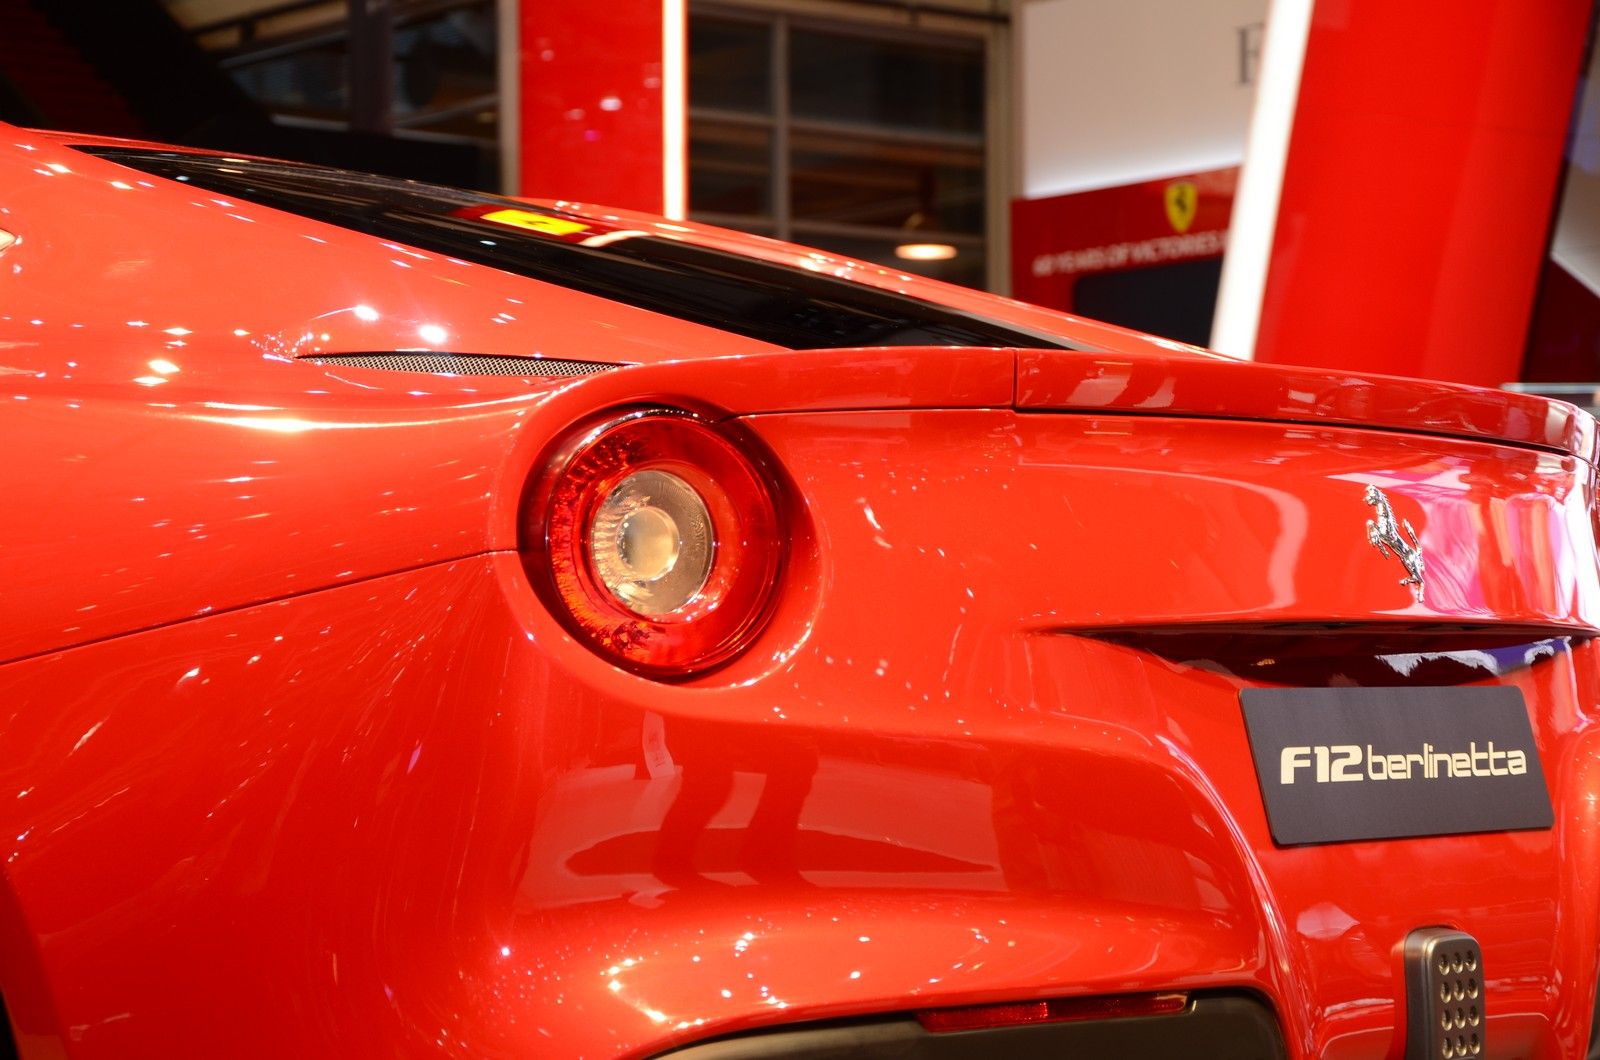 2013 Ferrari F12 berlinetta